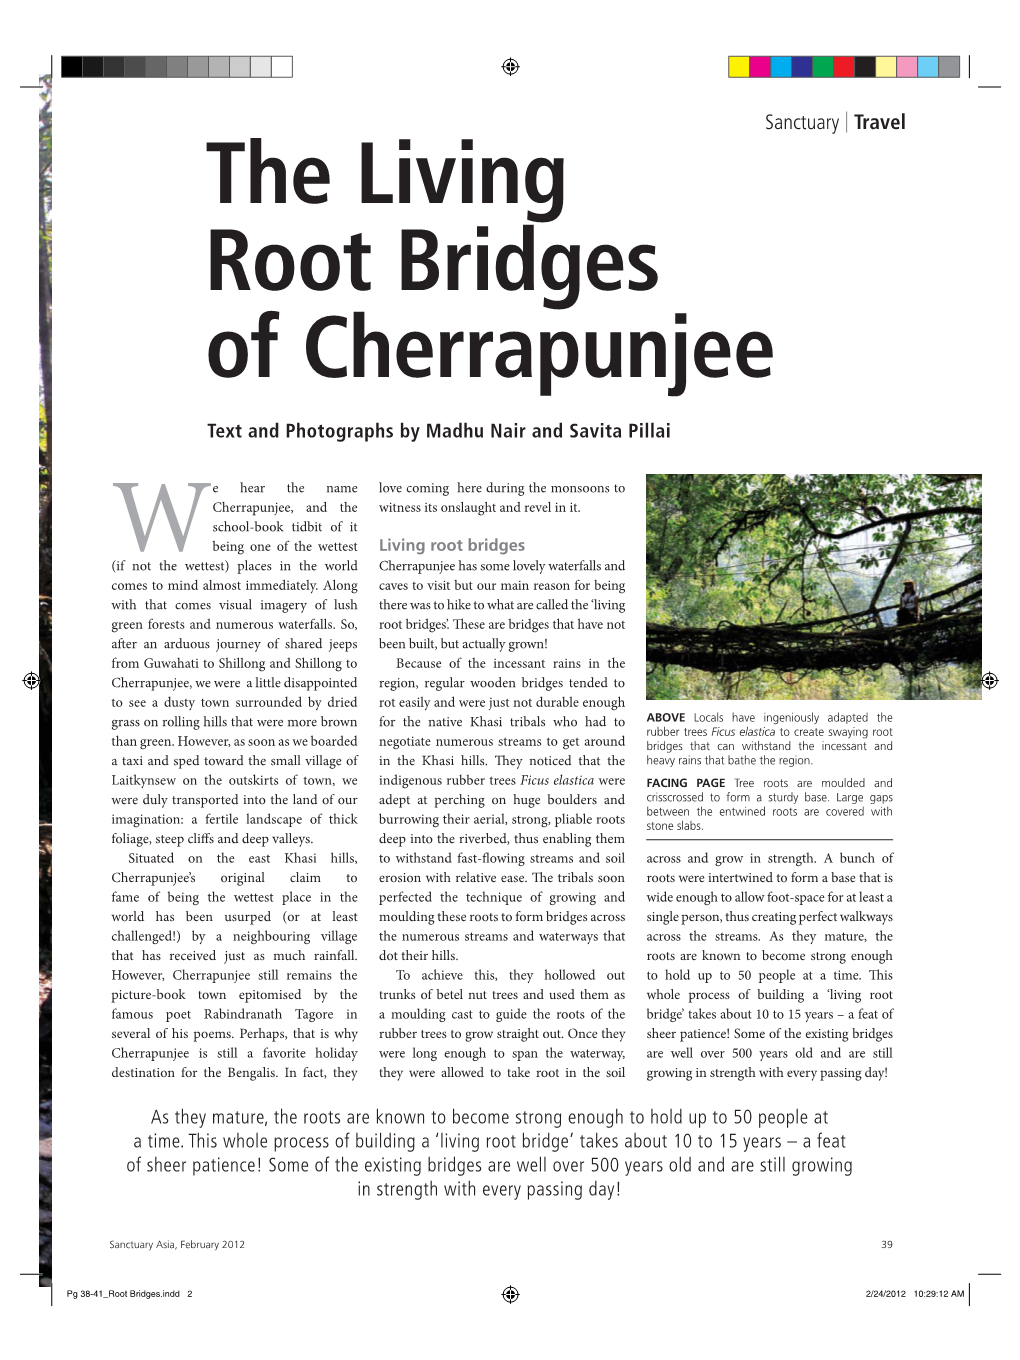 The Living Root Bridges of Cherrapunjee